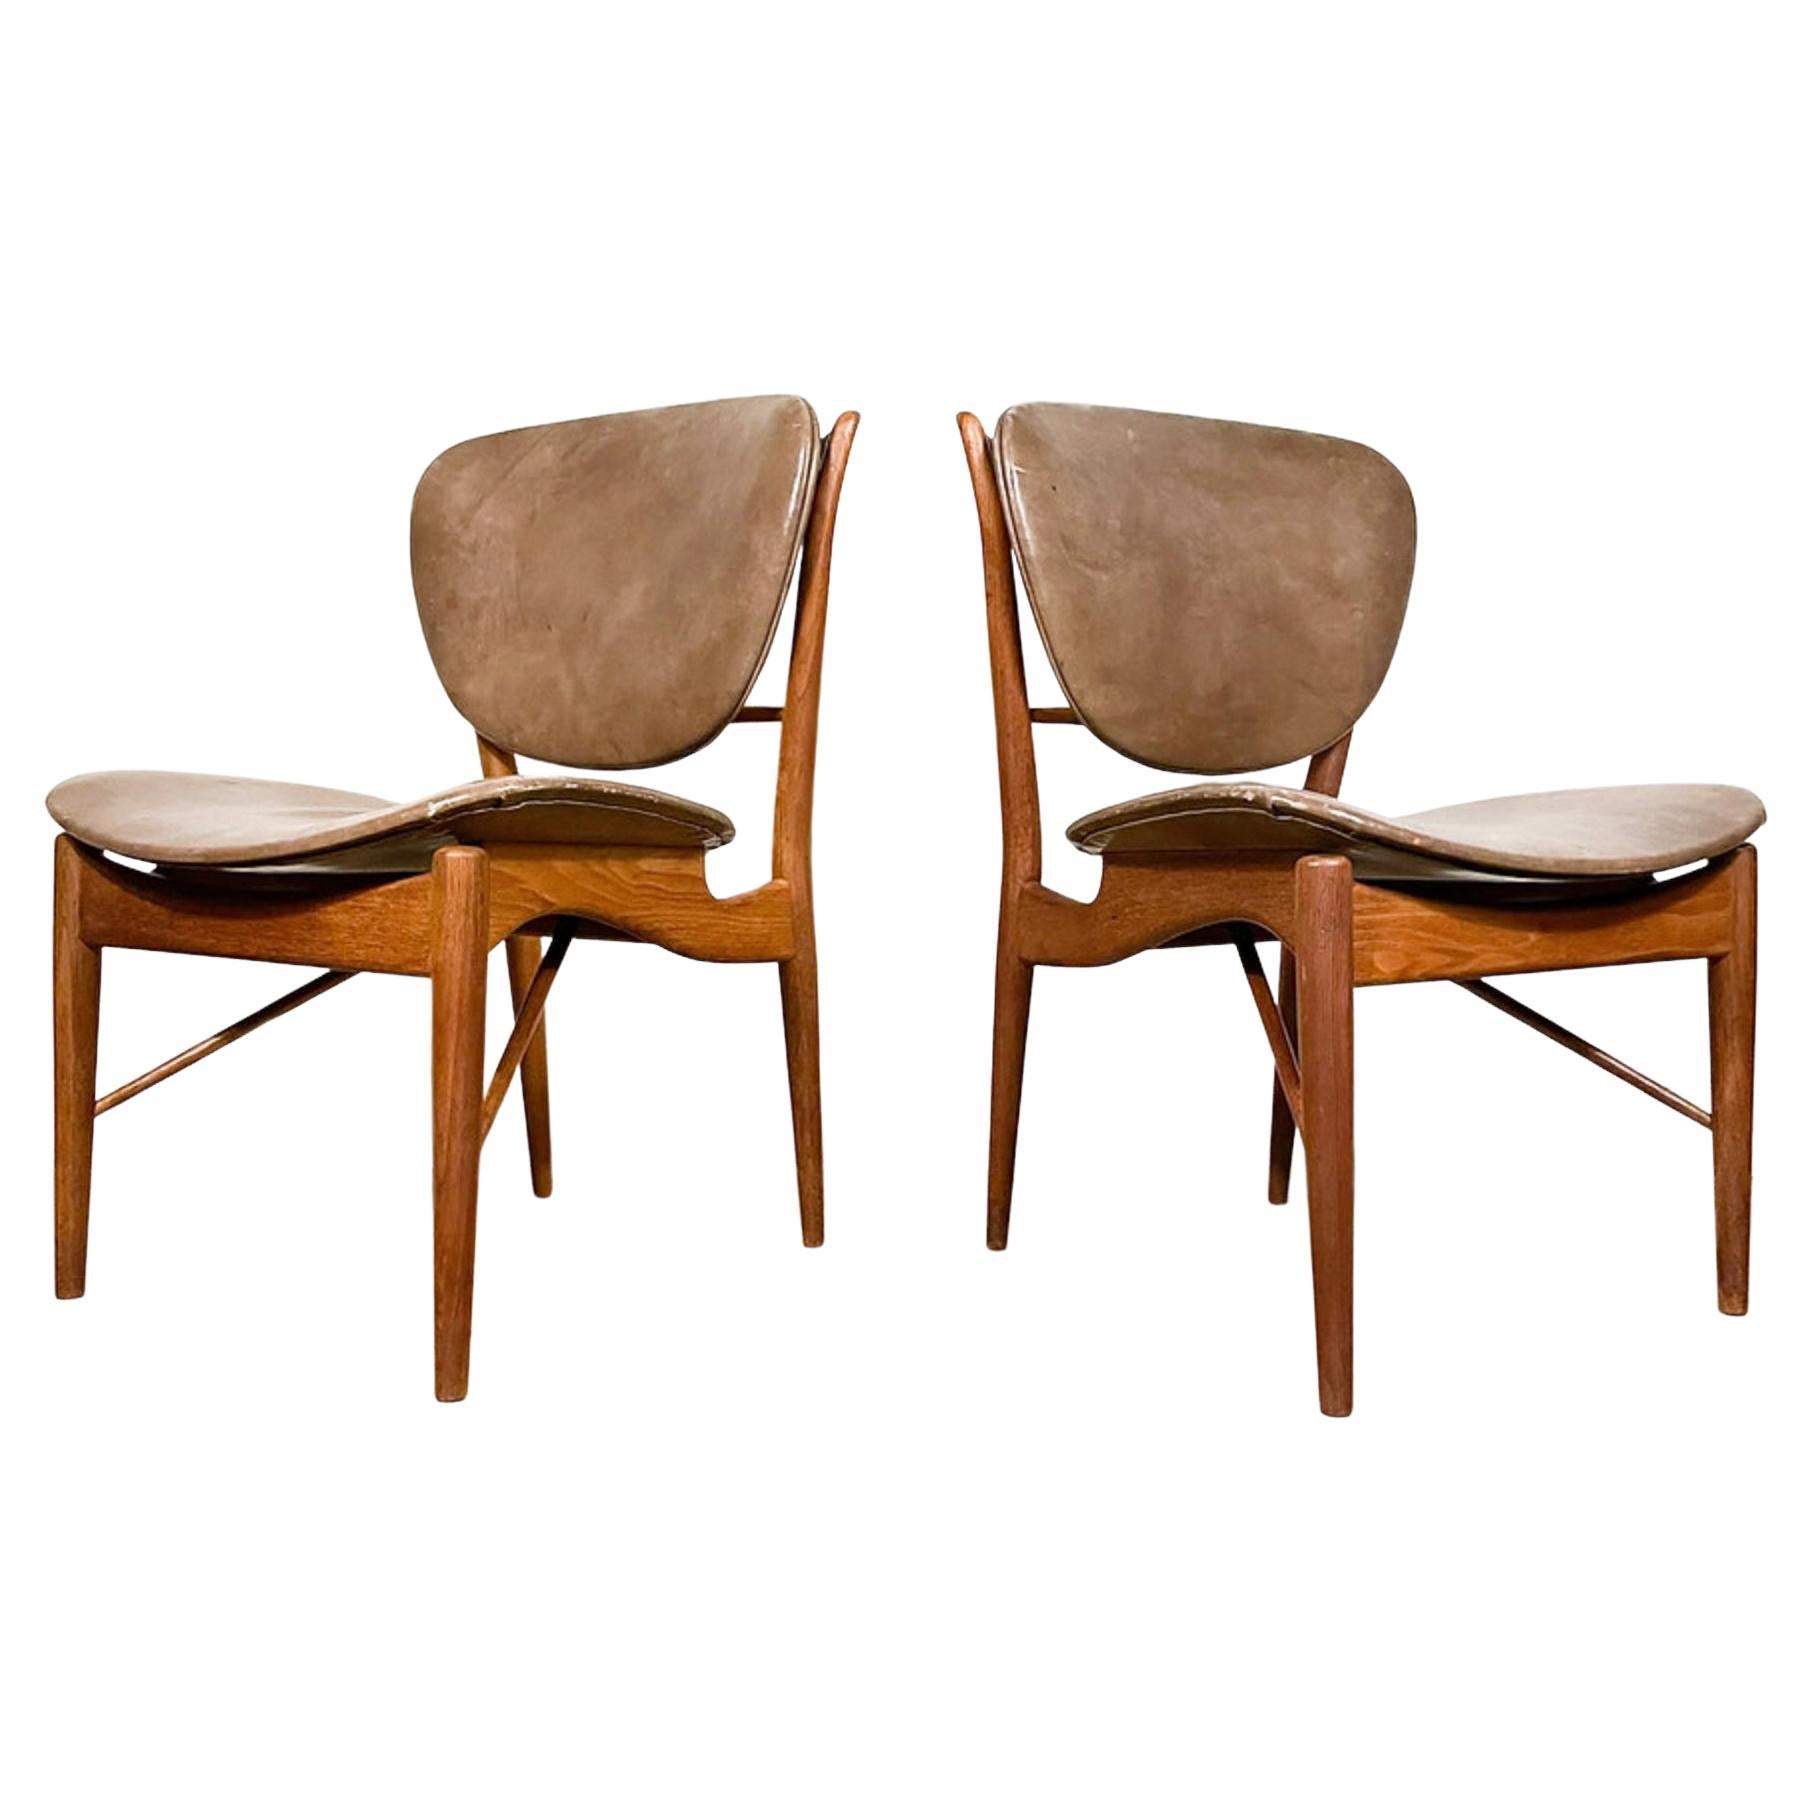 Finn Juhl 51 Chairs by Baker in Walnut